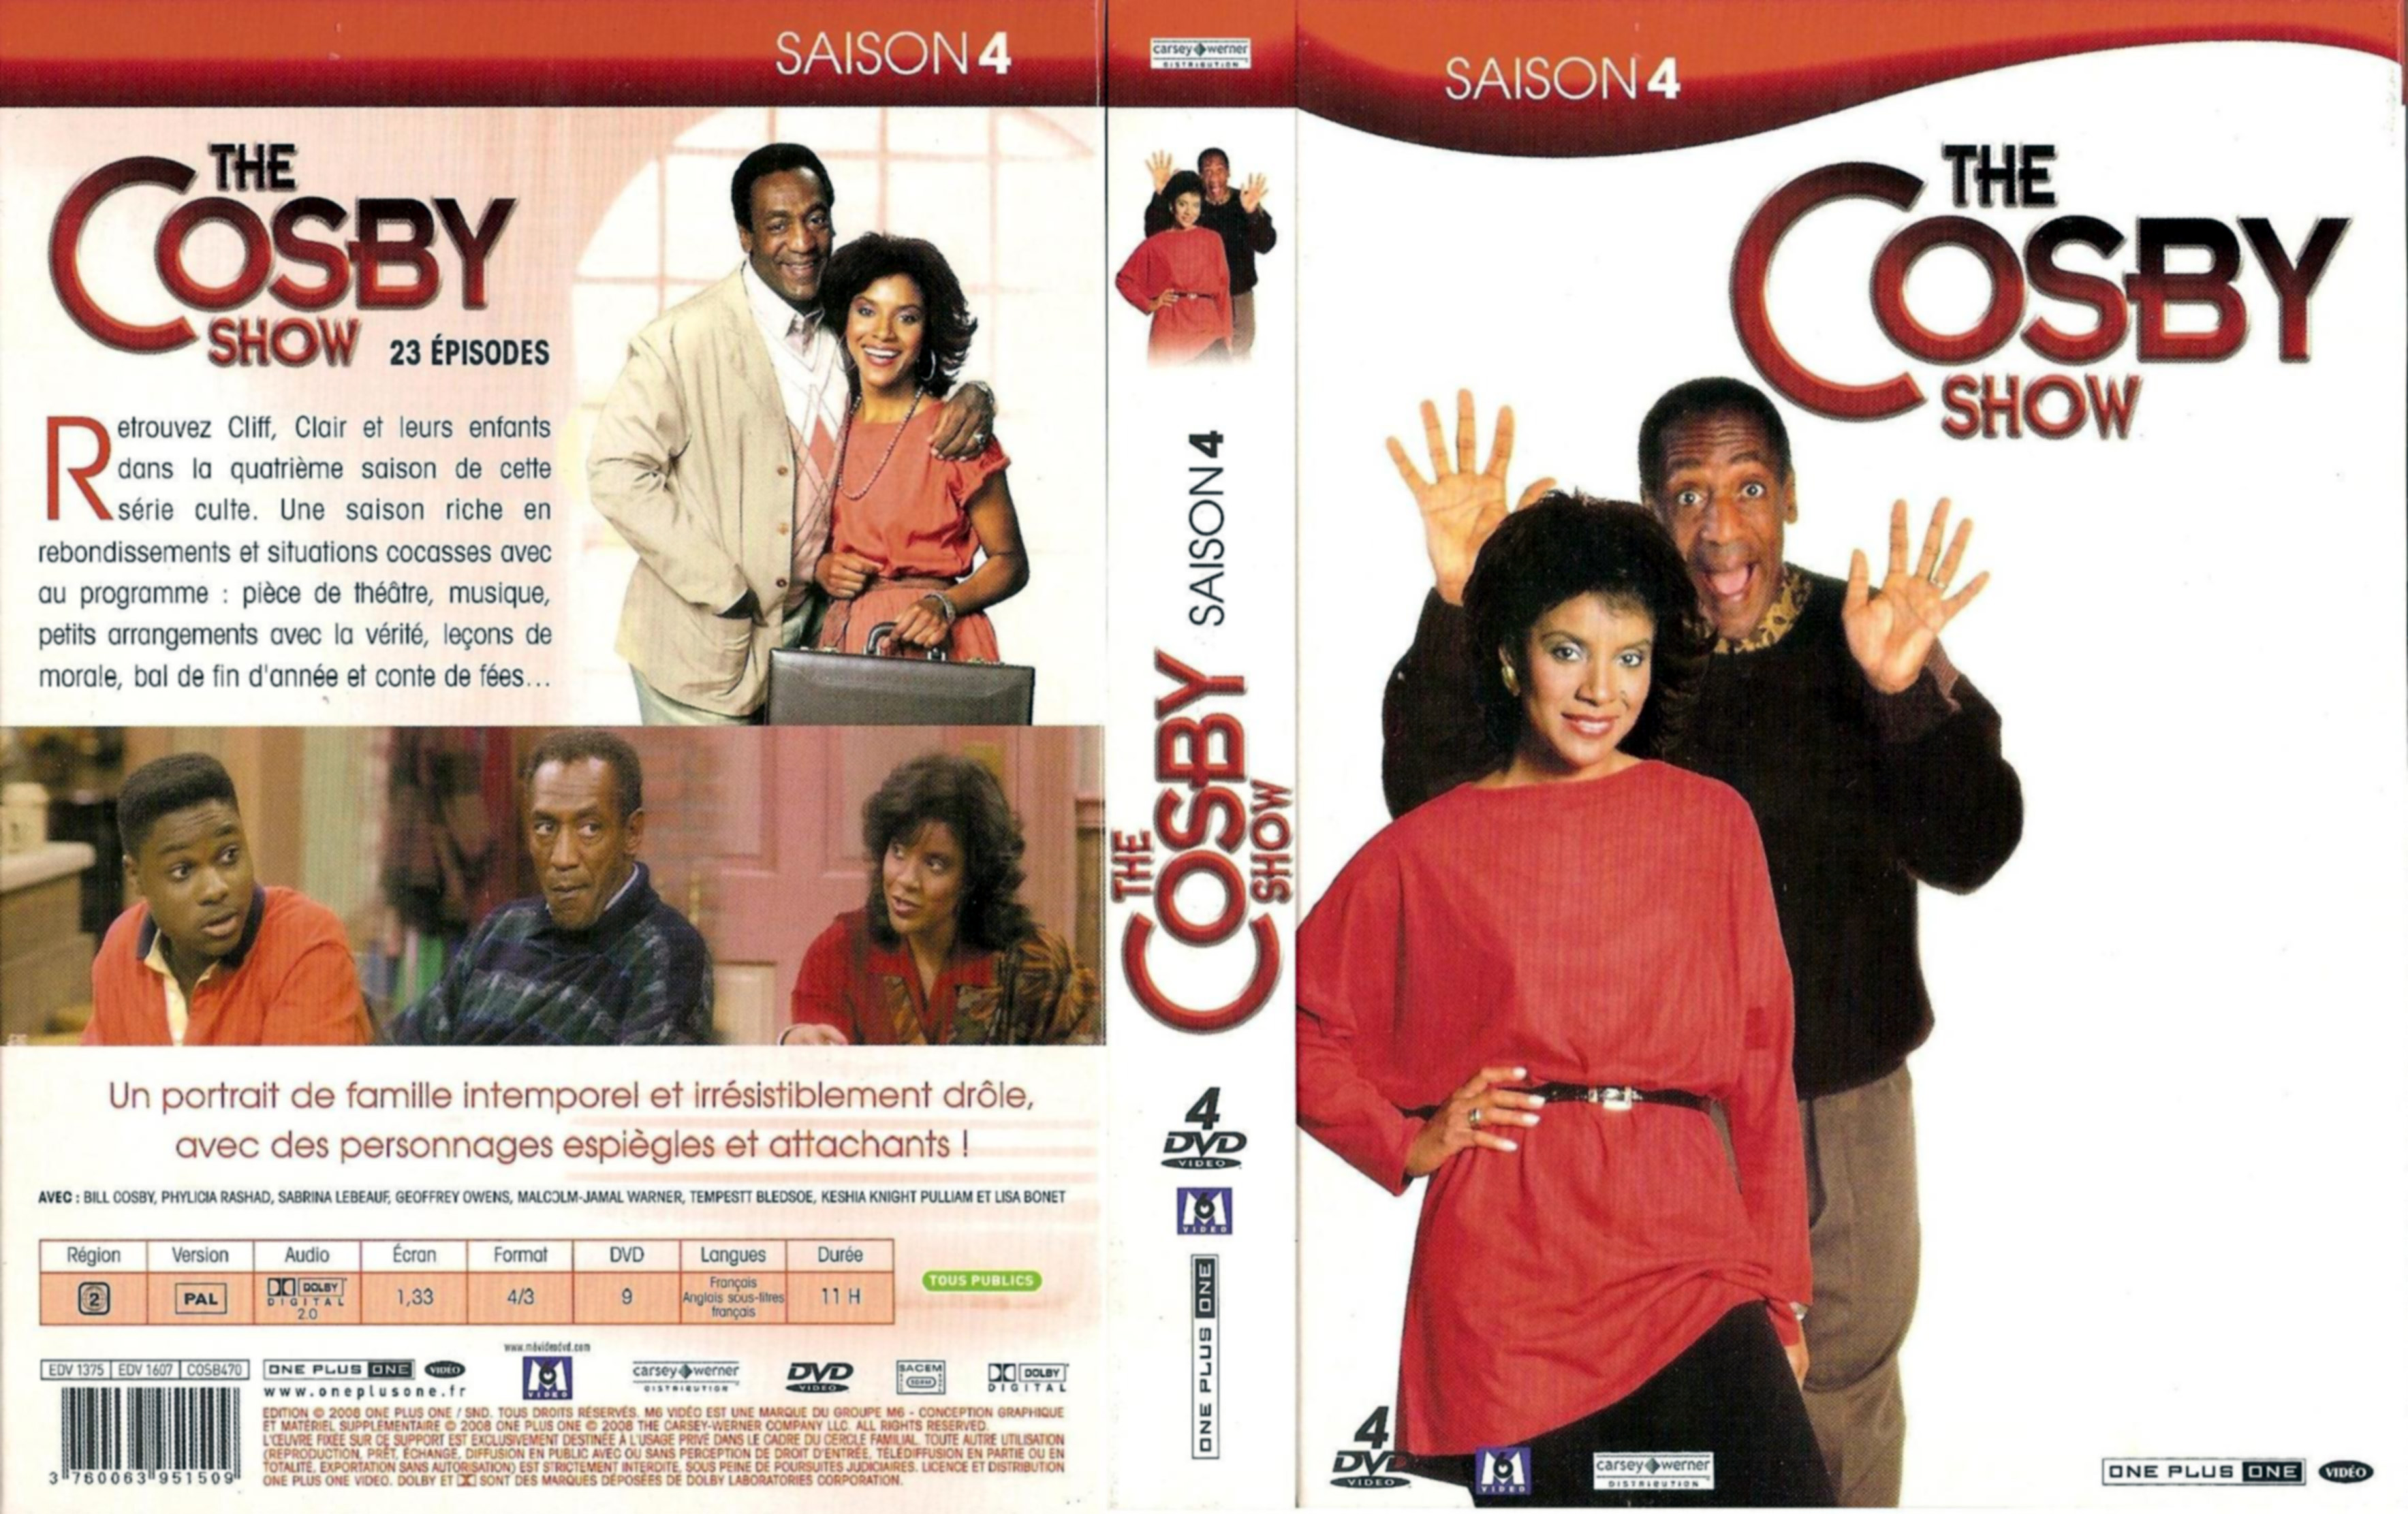 Jaquette DVD The Cosby show Saison 4 COFFRET